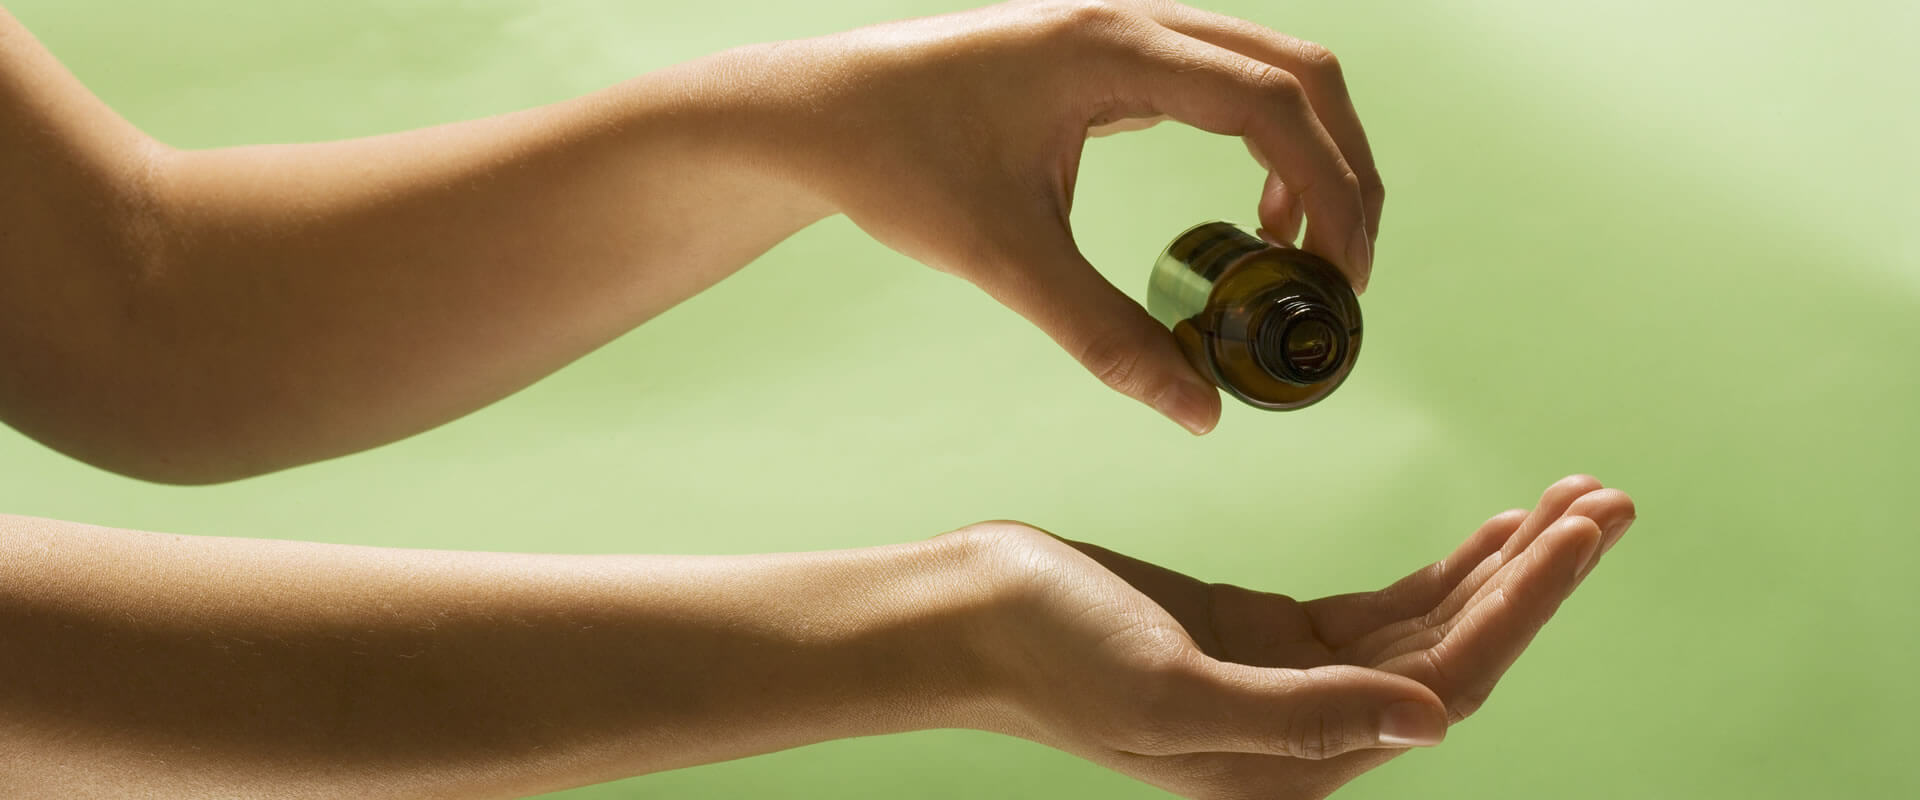 Packung Olivenöl für Haare – Fratelli Carli